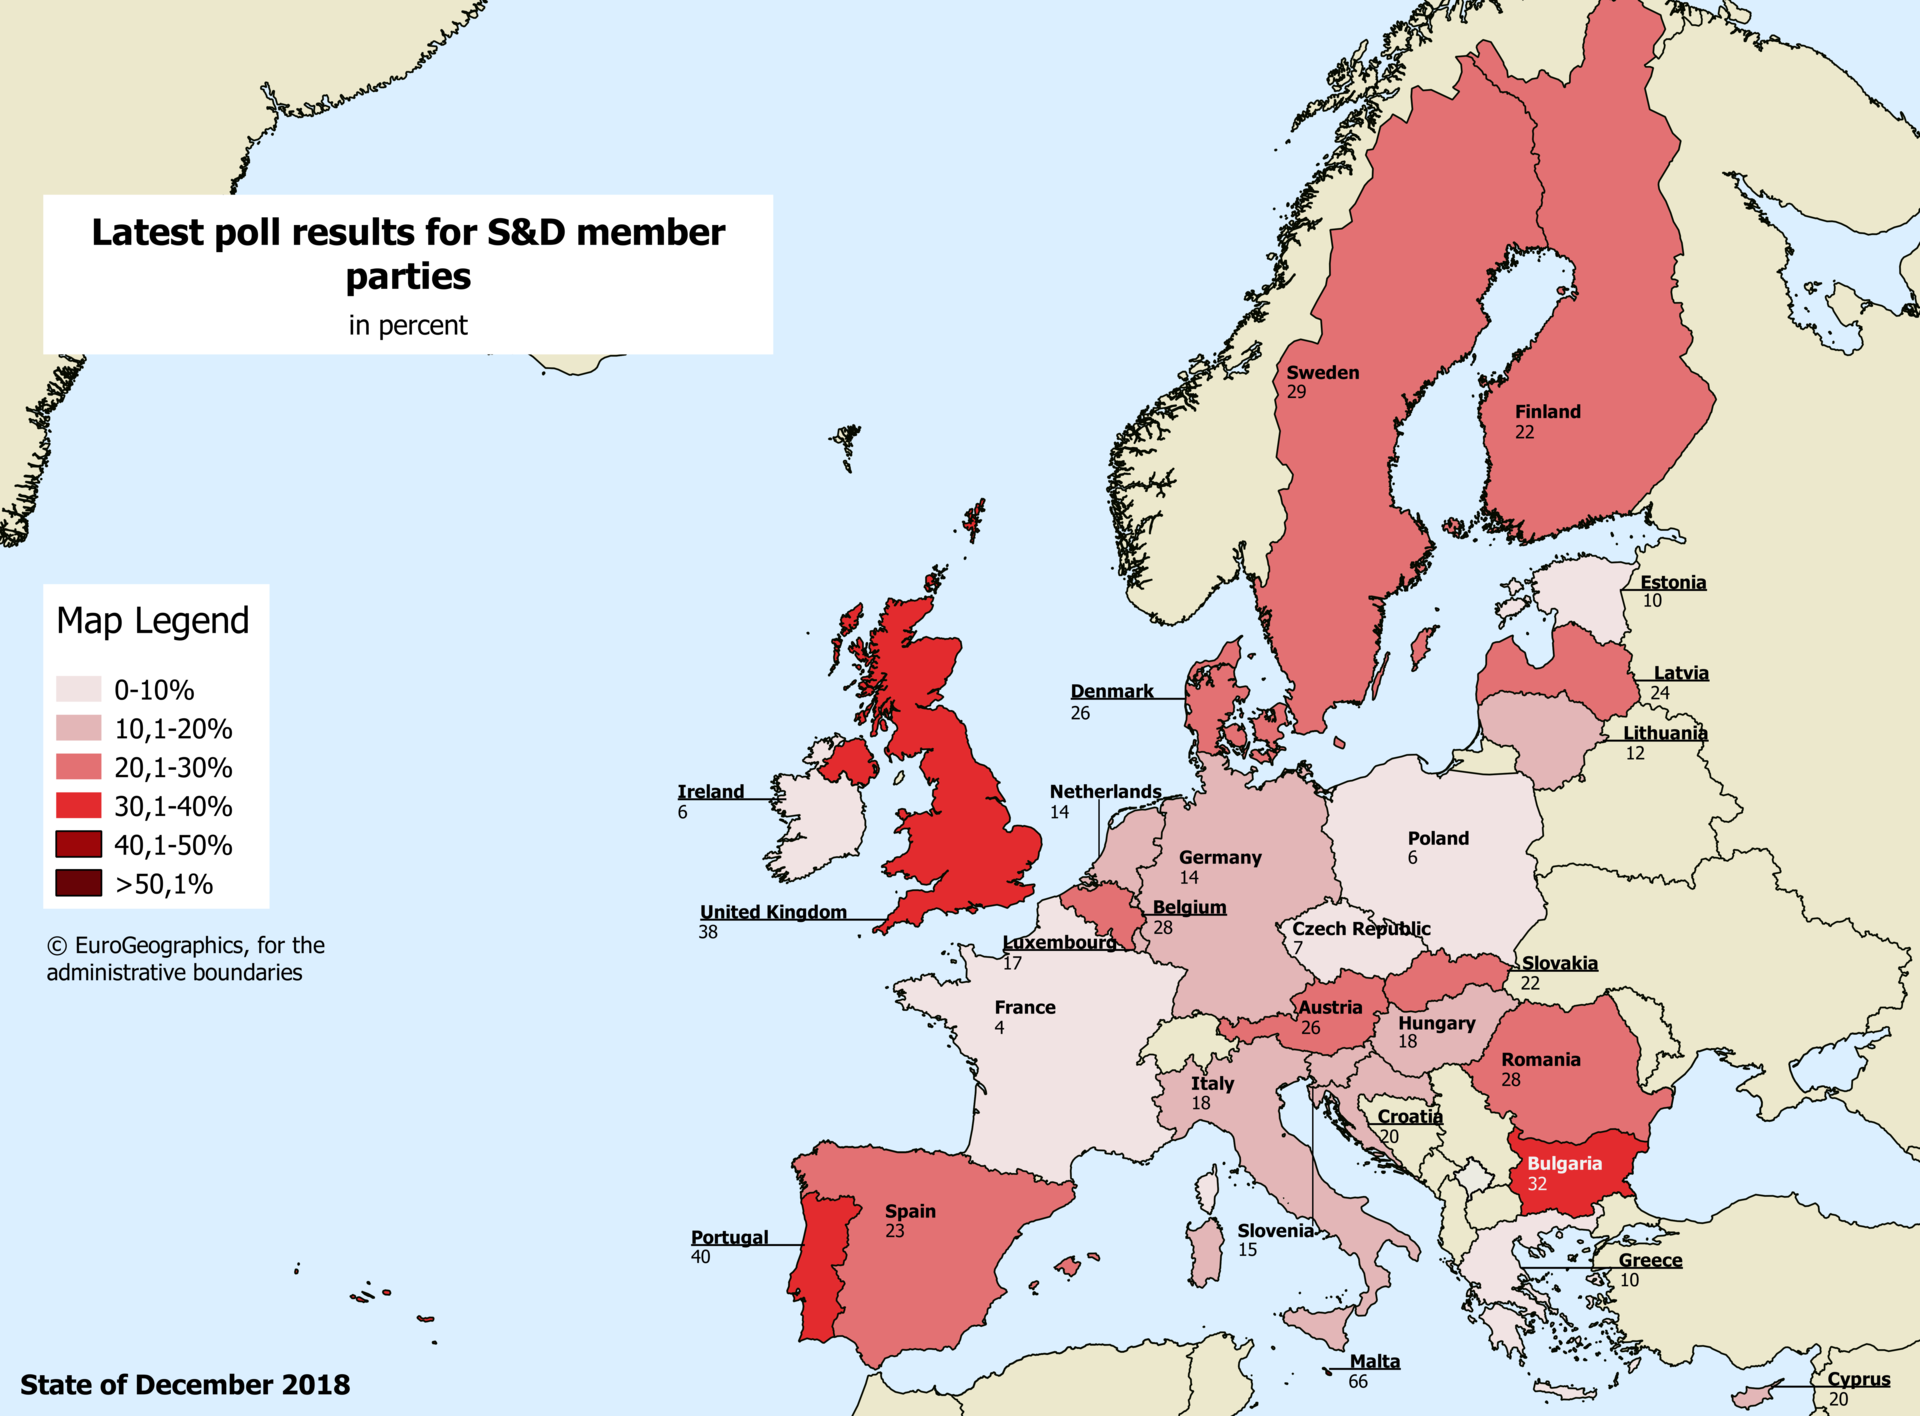 Europakarte mit aktuellen Umfrageergebnissen der sozialen und demokratischen Mitgliedsparteien 2018.